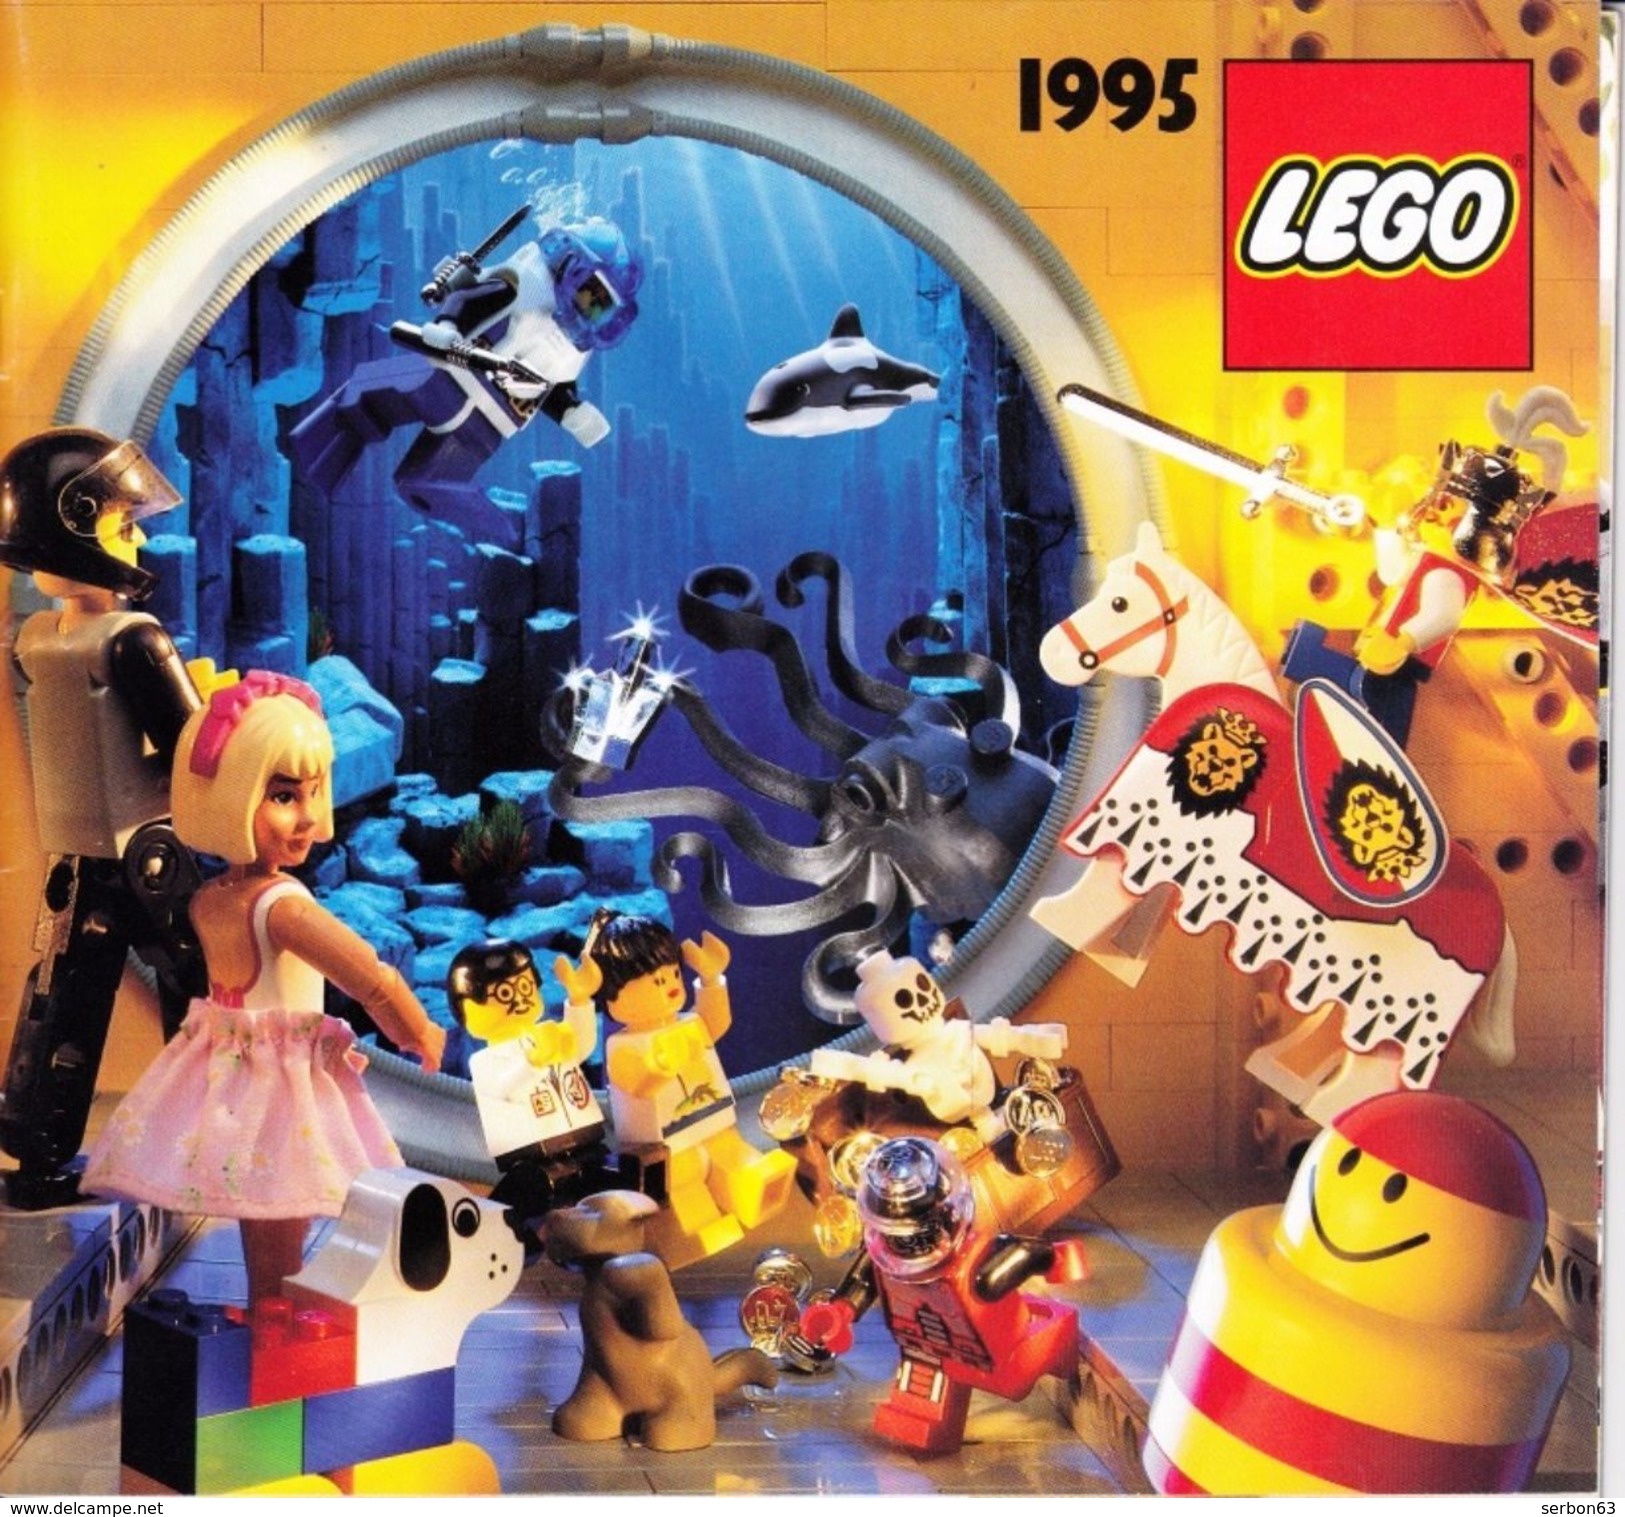 UN CATALOGUE LEGO DE 1995 56 PAGES COULEUR LEGER PLI SUR LA DE (SUR MON SITE Serbon63 DES MILLIERS D'ARTICLES EN VENTES) - Catalogs